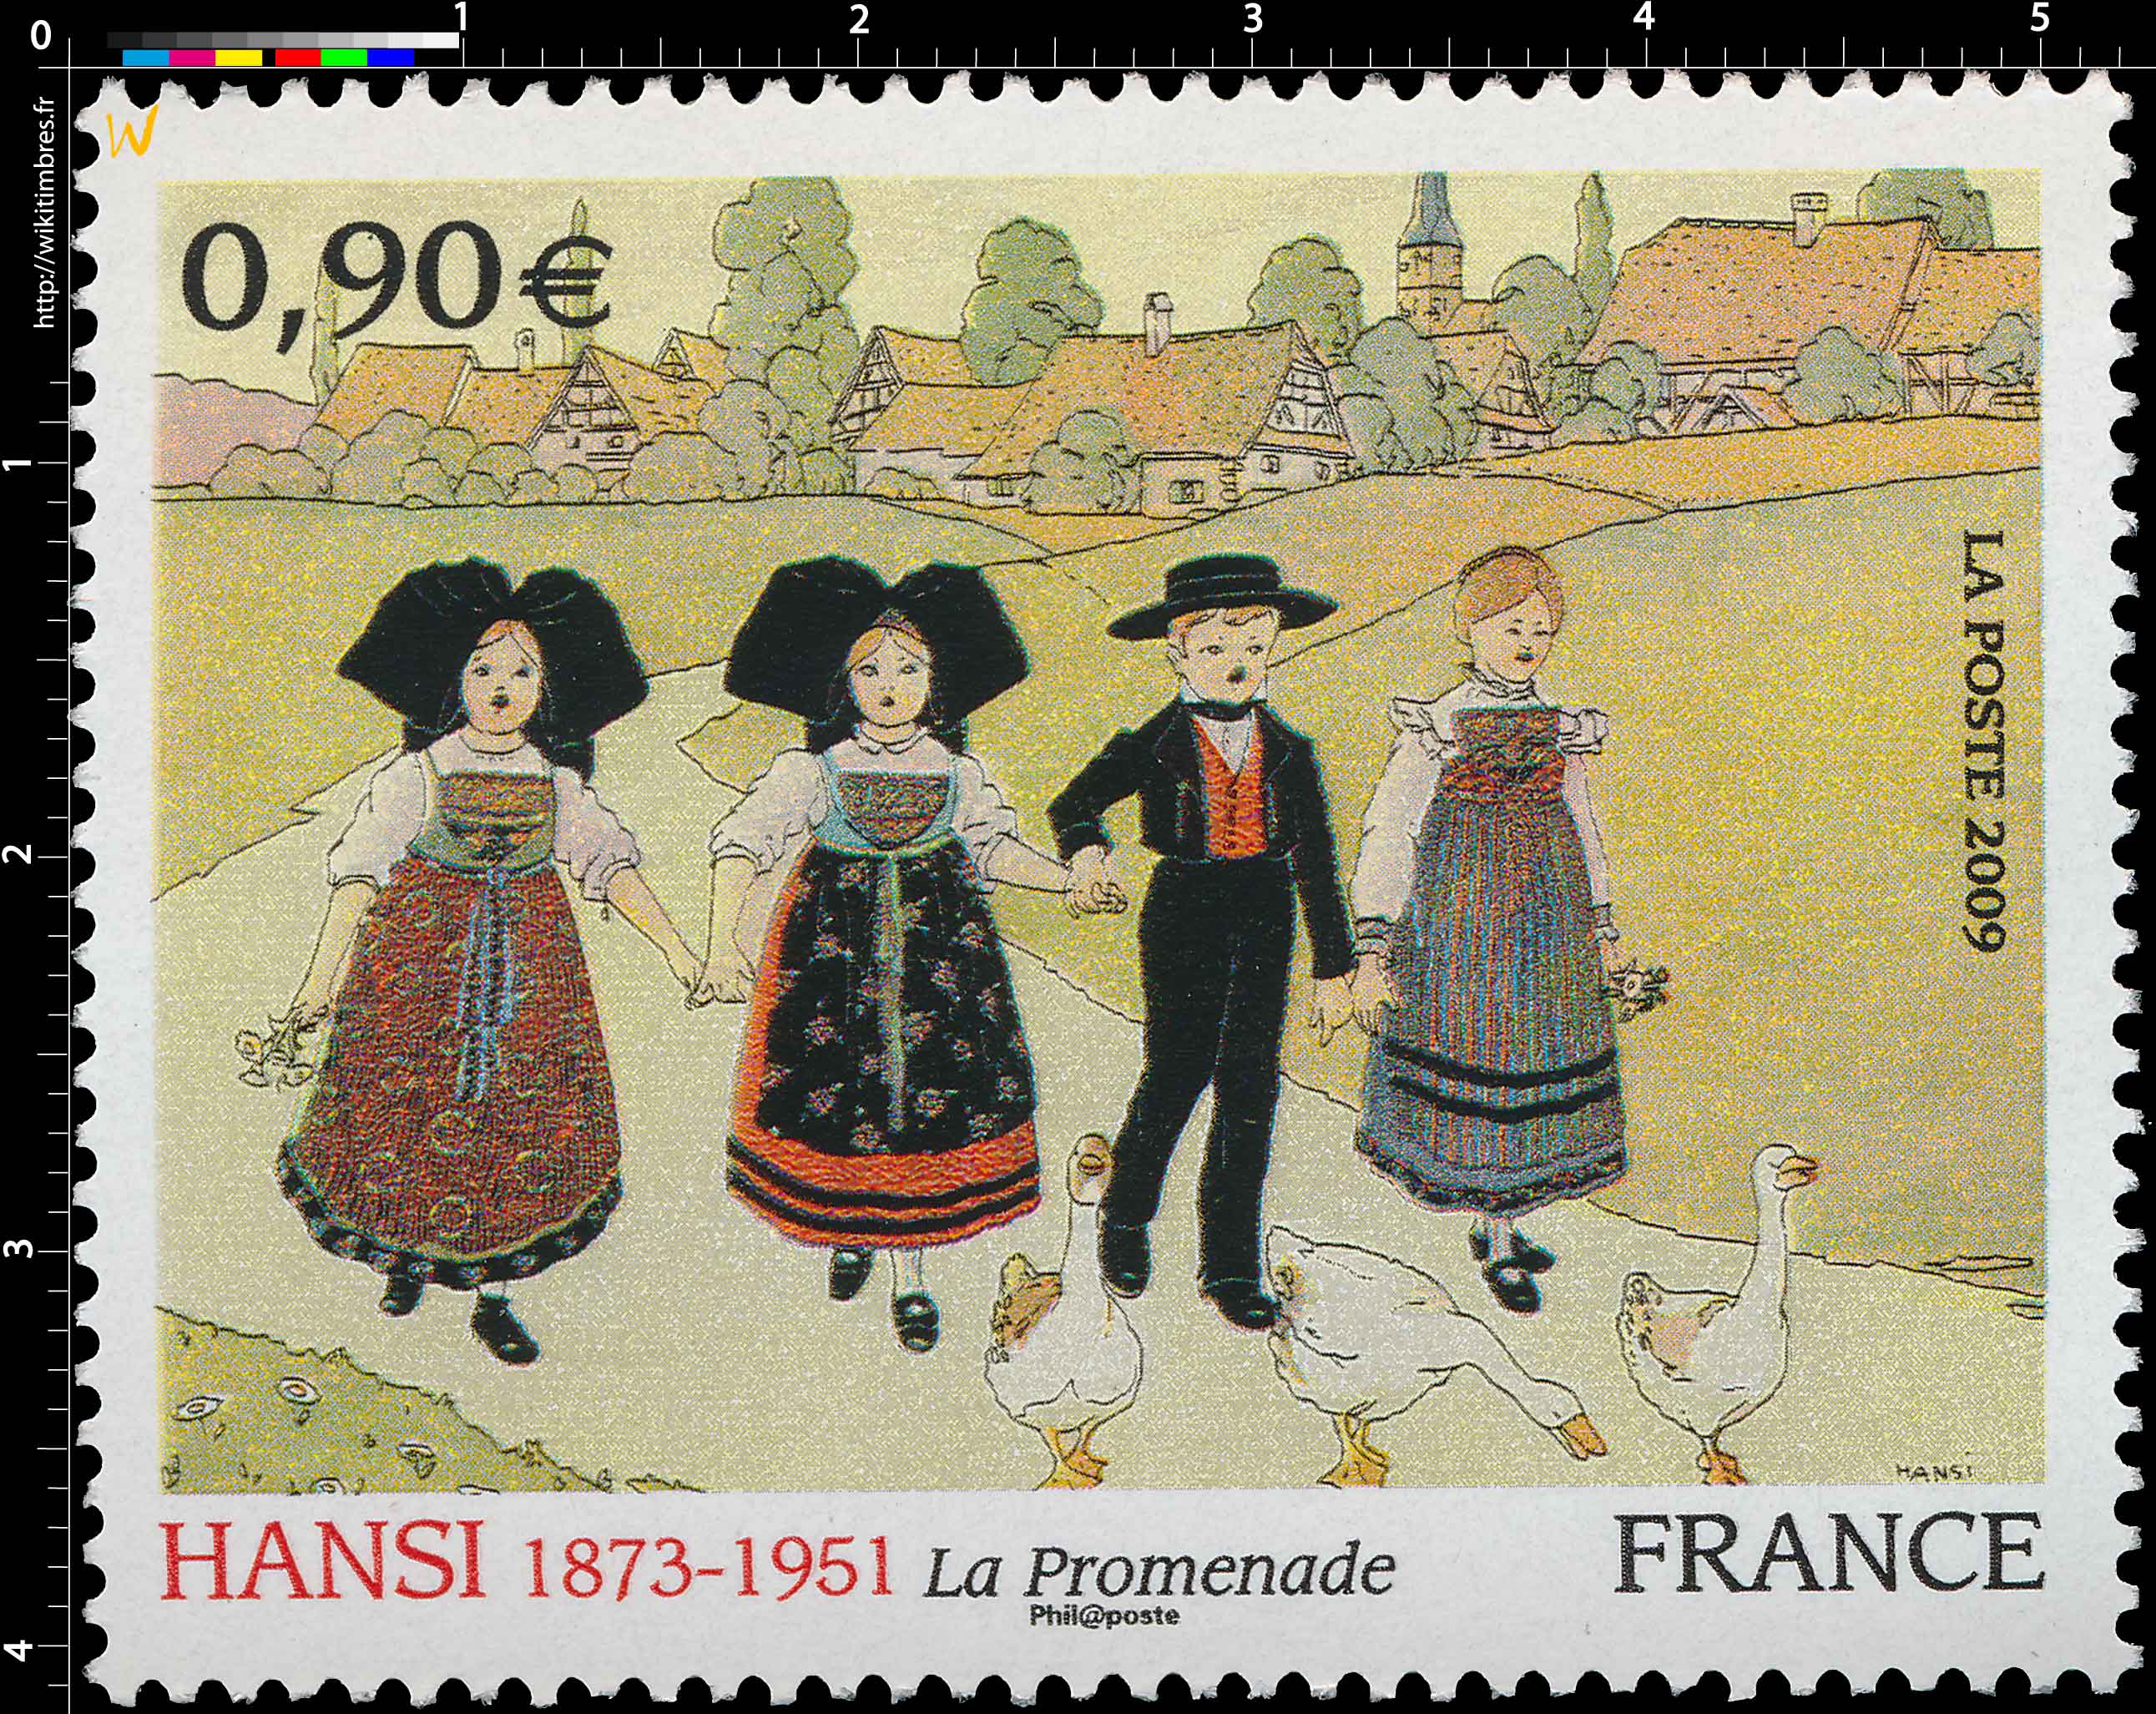 2009 HANSI 1873-1951 La Promenade